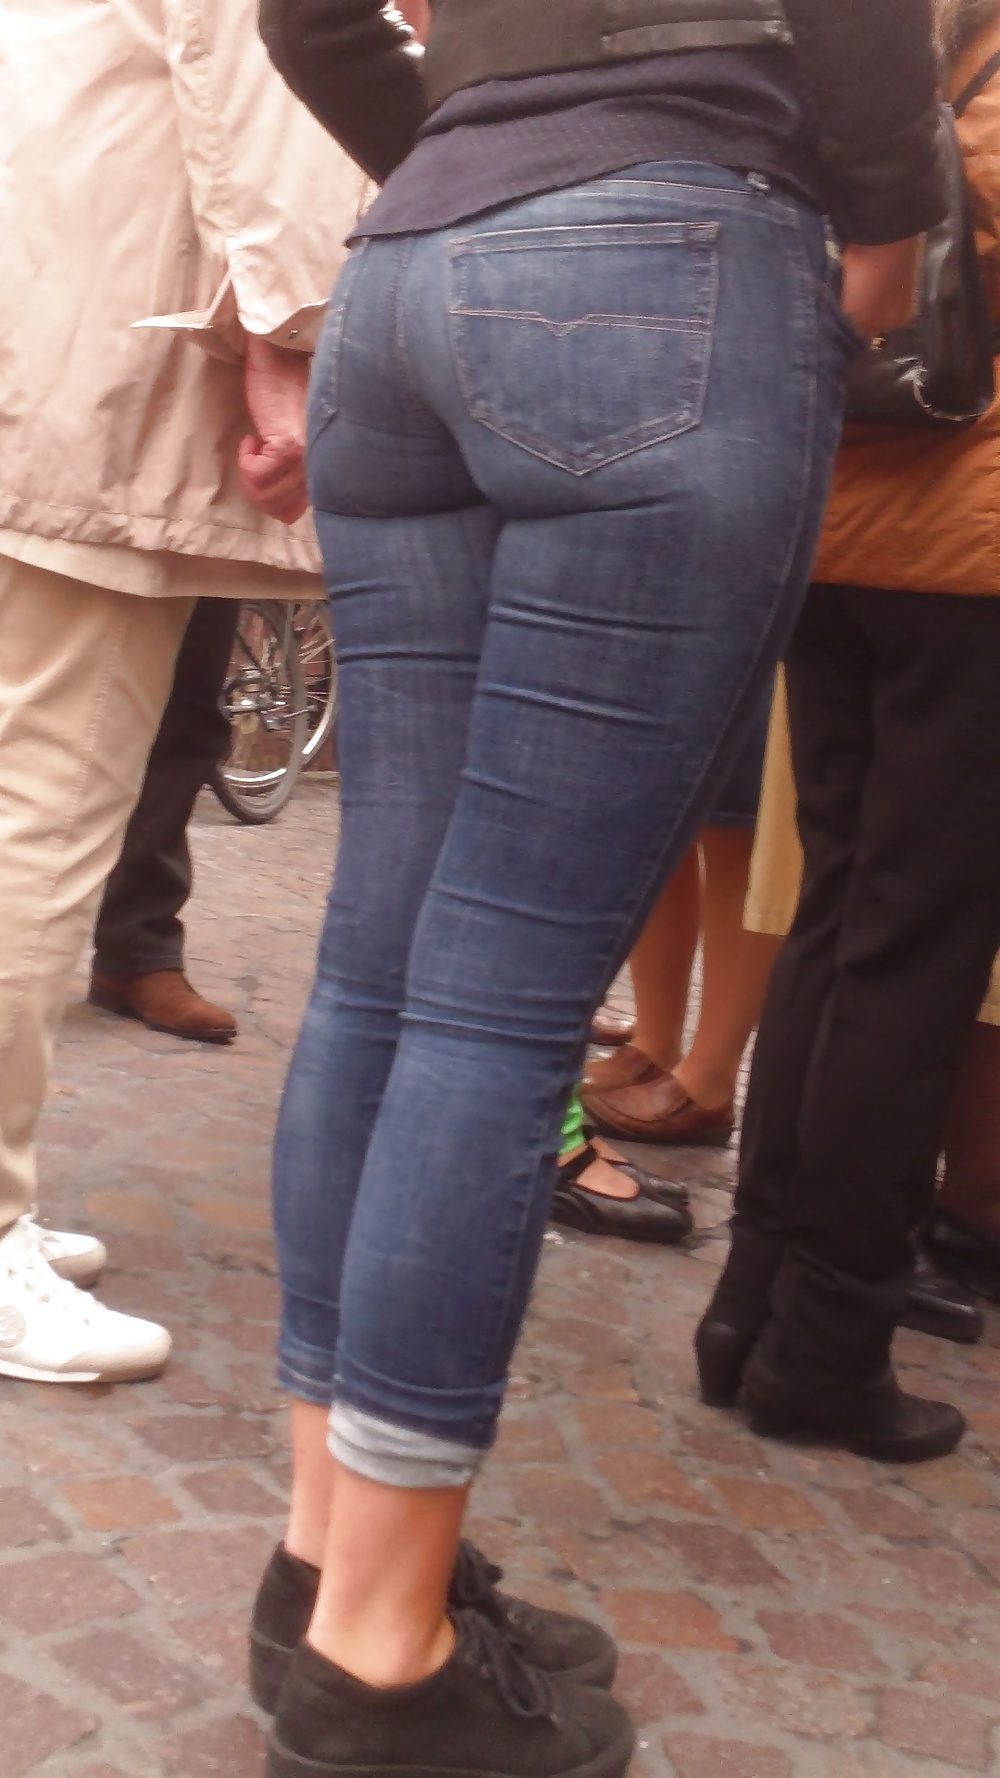 Popular teen girls ass & butt in jeans Part 6 #32010443